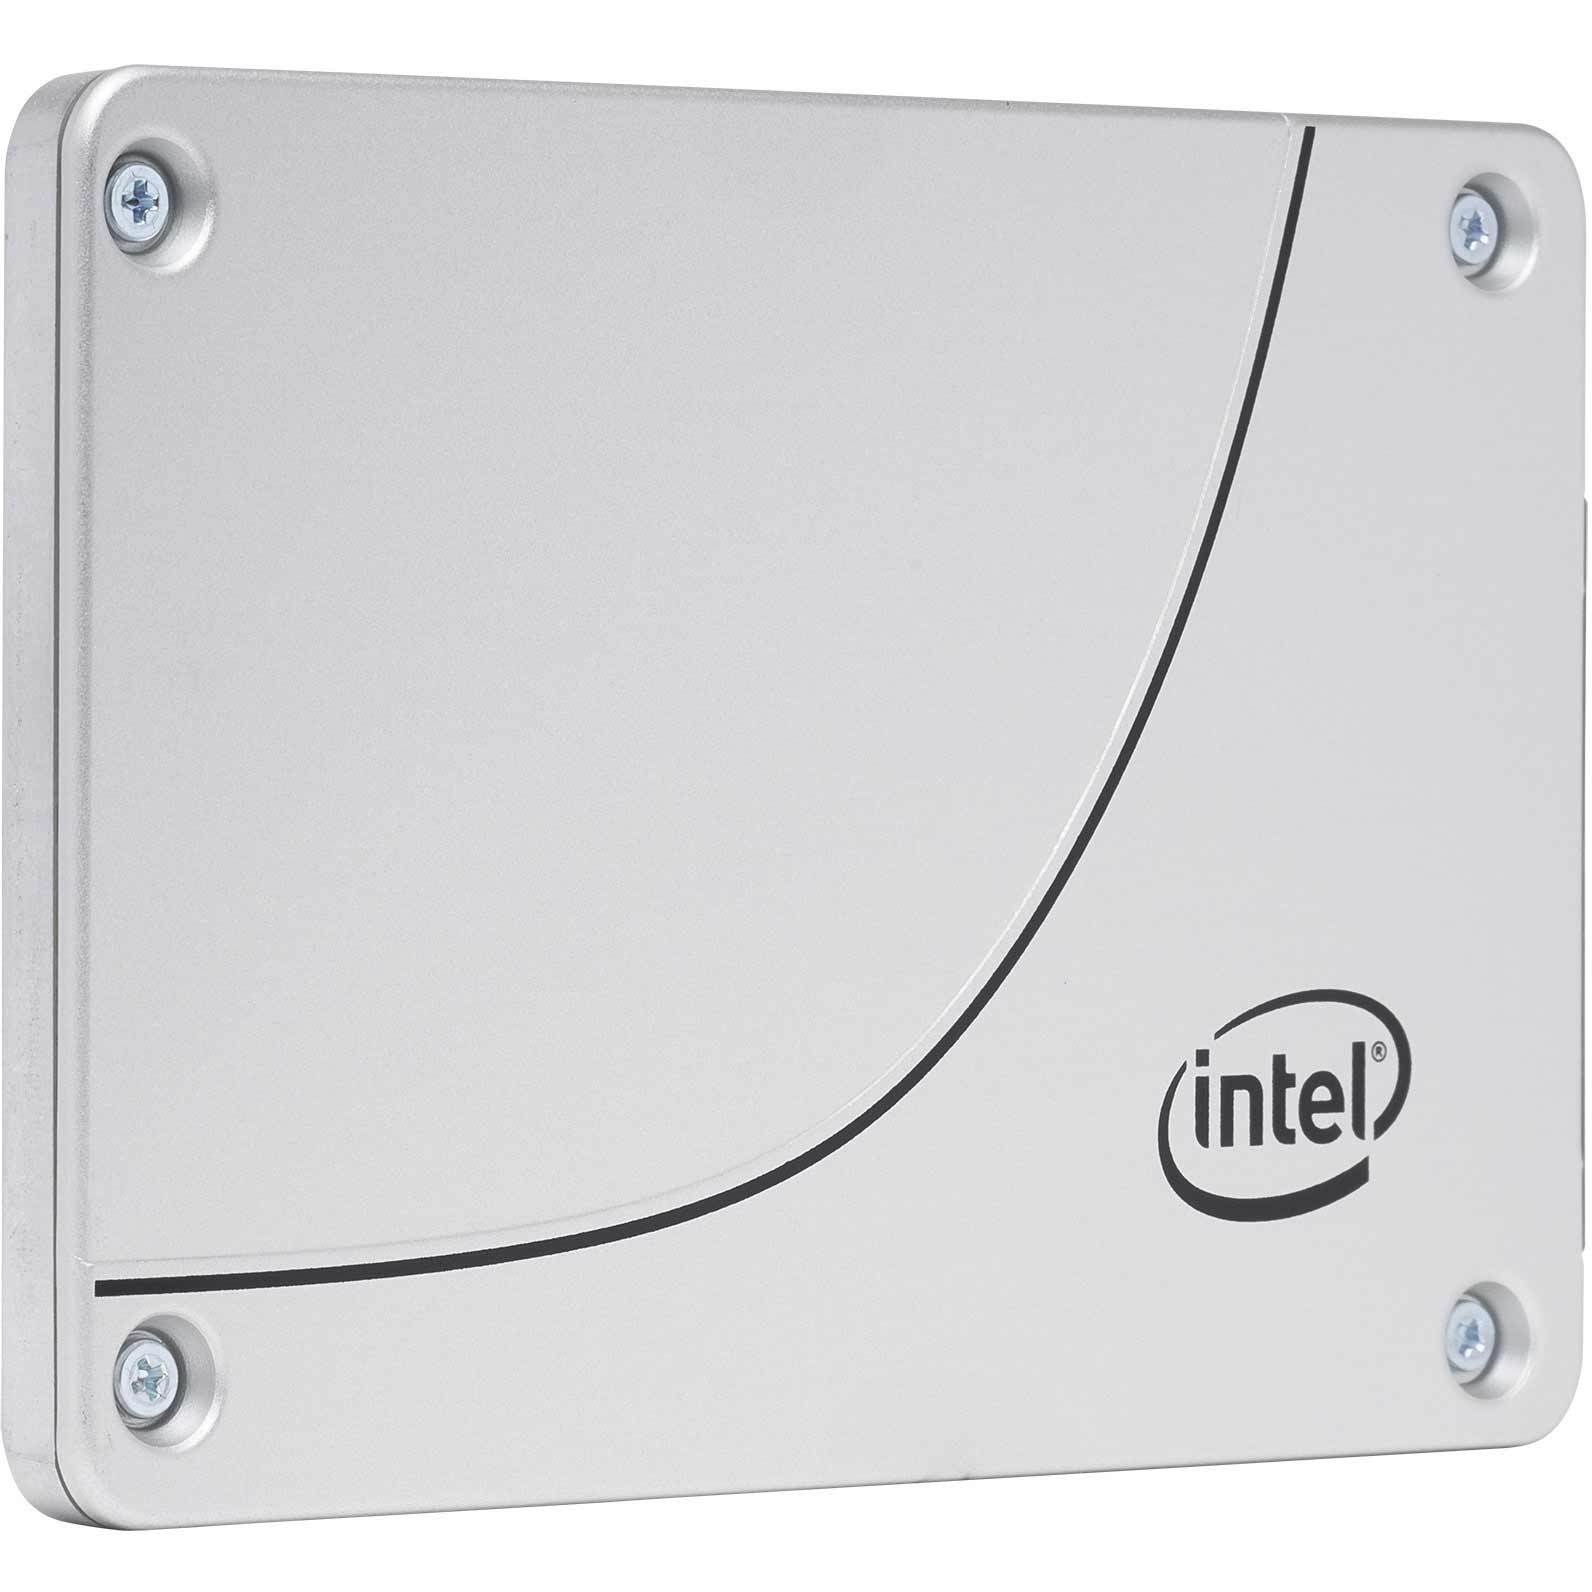 Intel DC S4500 SSDSC2KB038T701 3.84TB SATA 6Gb/s 2.5" Manufacturer Recertified SSD